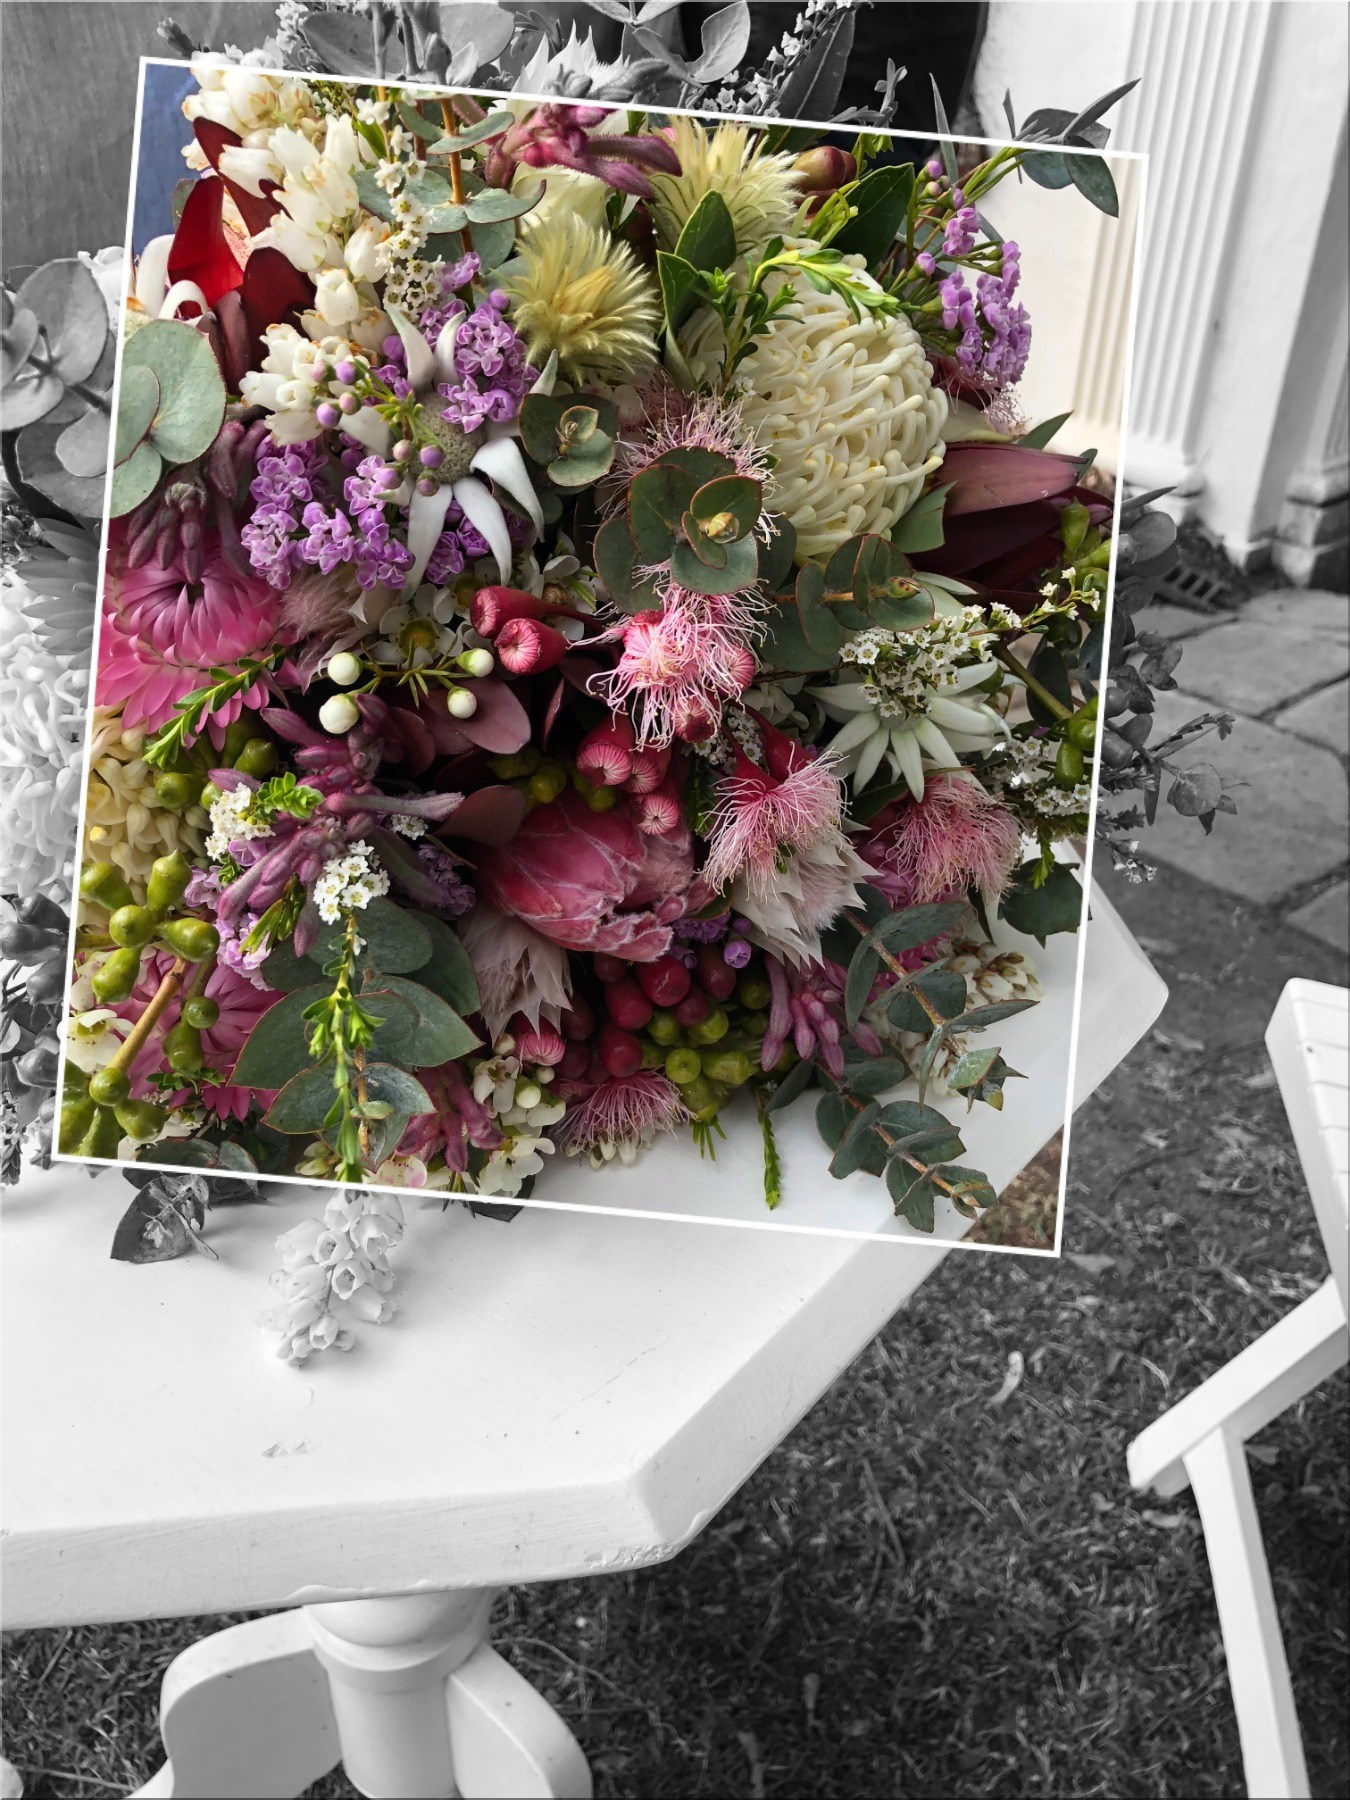 mcgrathshill-wedding-bouquet